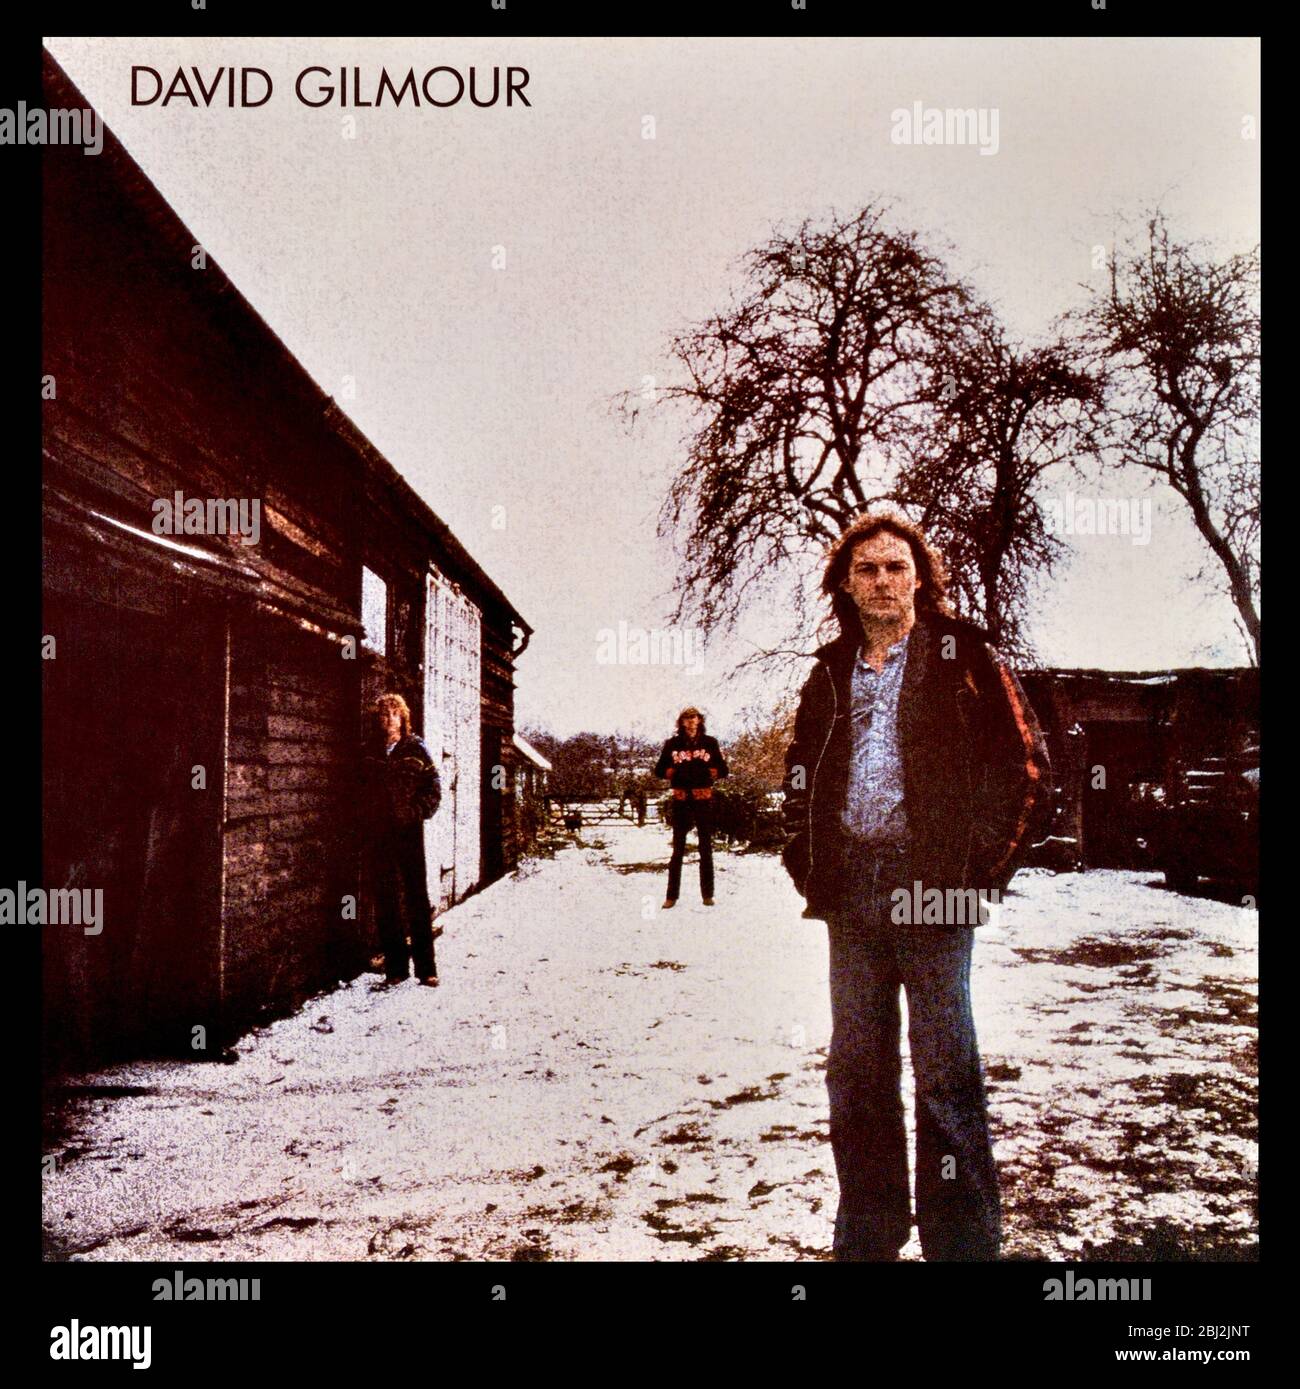 David Gilmour - portada original del álbum de vinilo - David Gilmour - 1978 Foto de stock